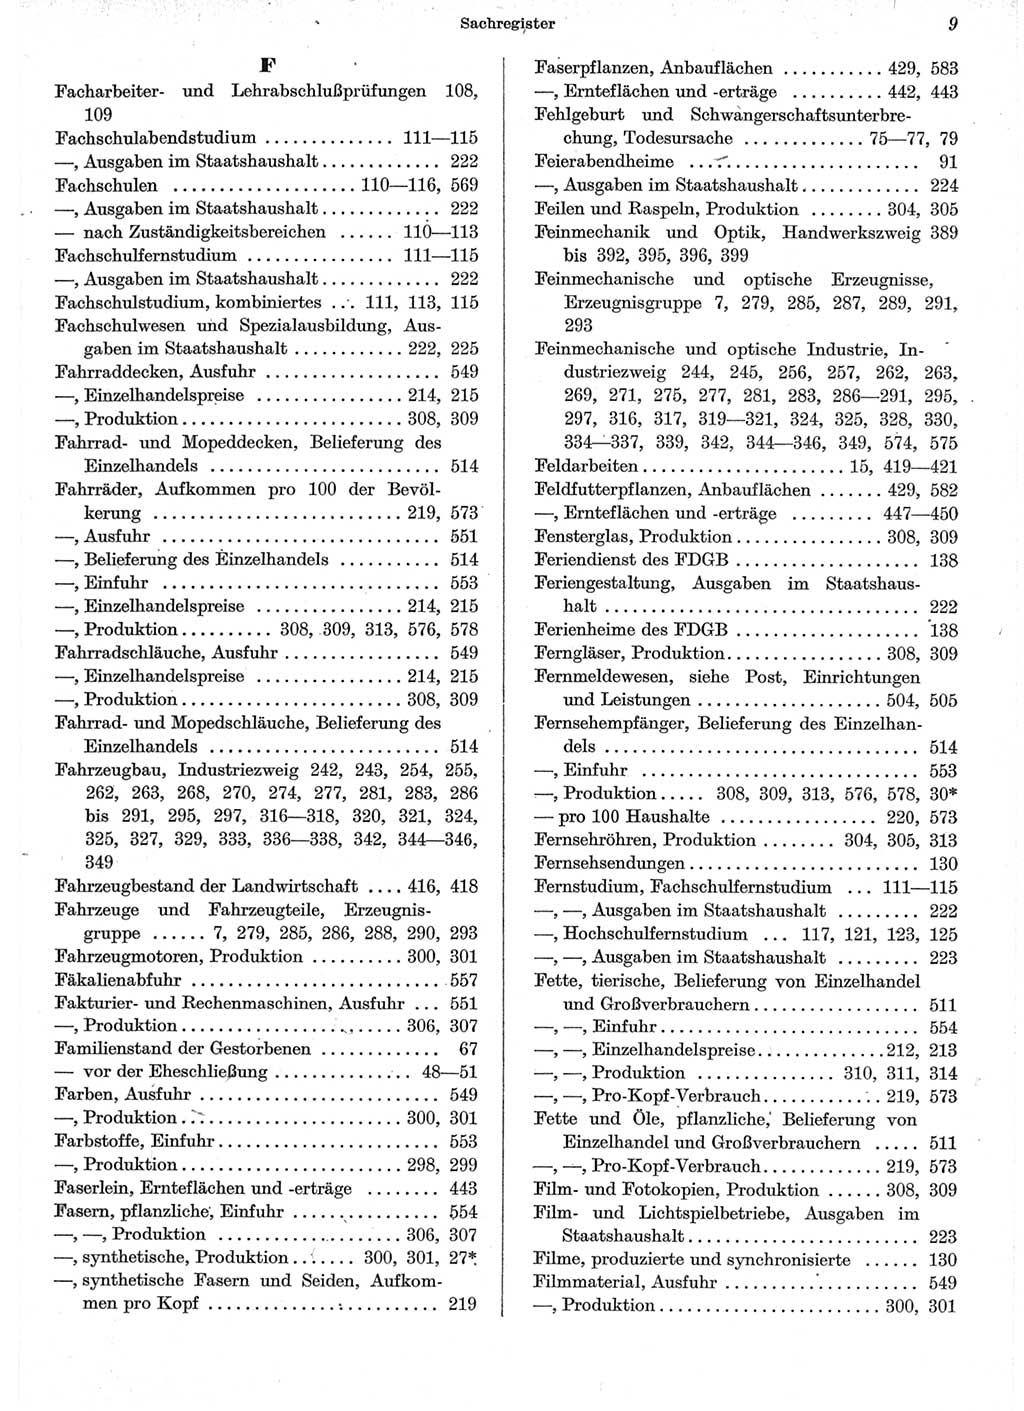 Statistisches Jahrbuch der Deutschen Demokratischen Republik (DDR) 1962, Seite 9 (Stat. Jb. DDR 1962, S. 9)